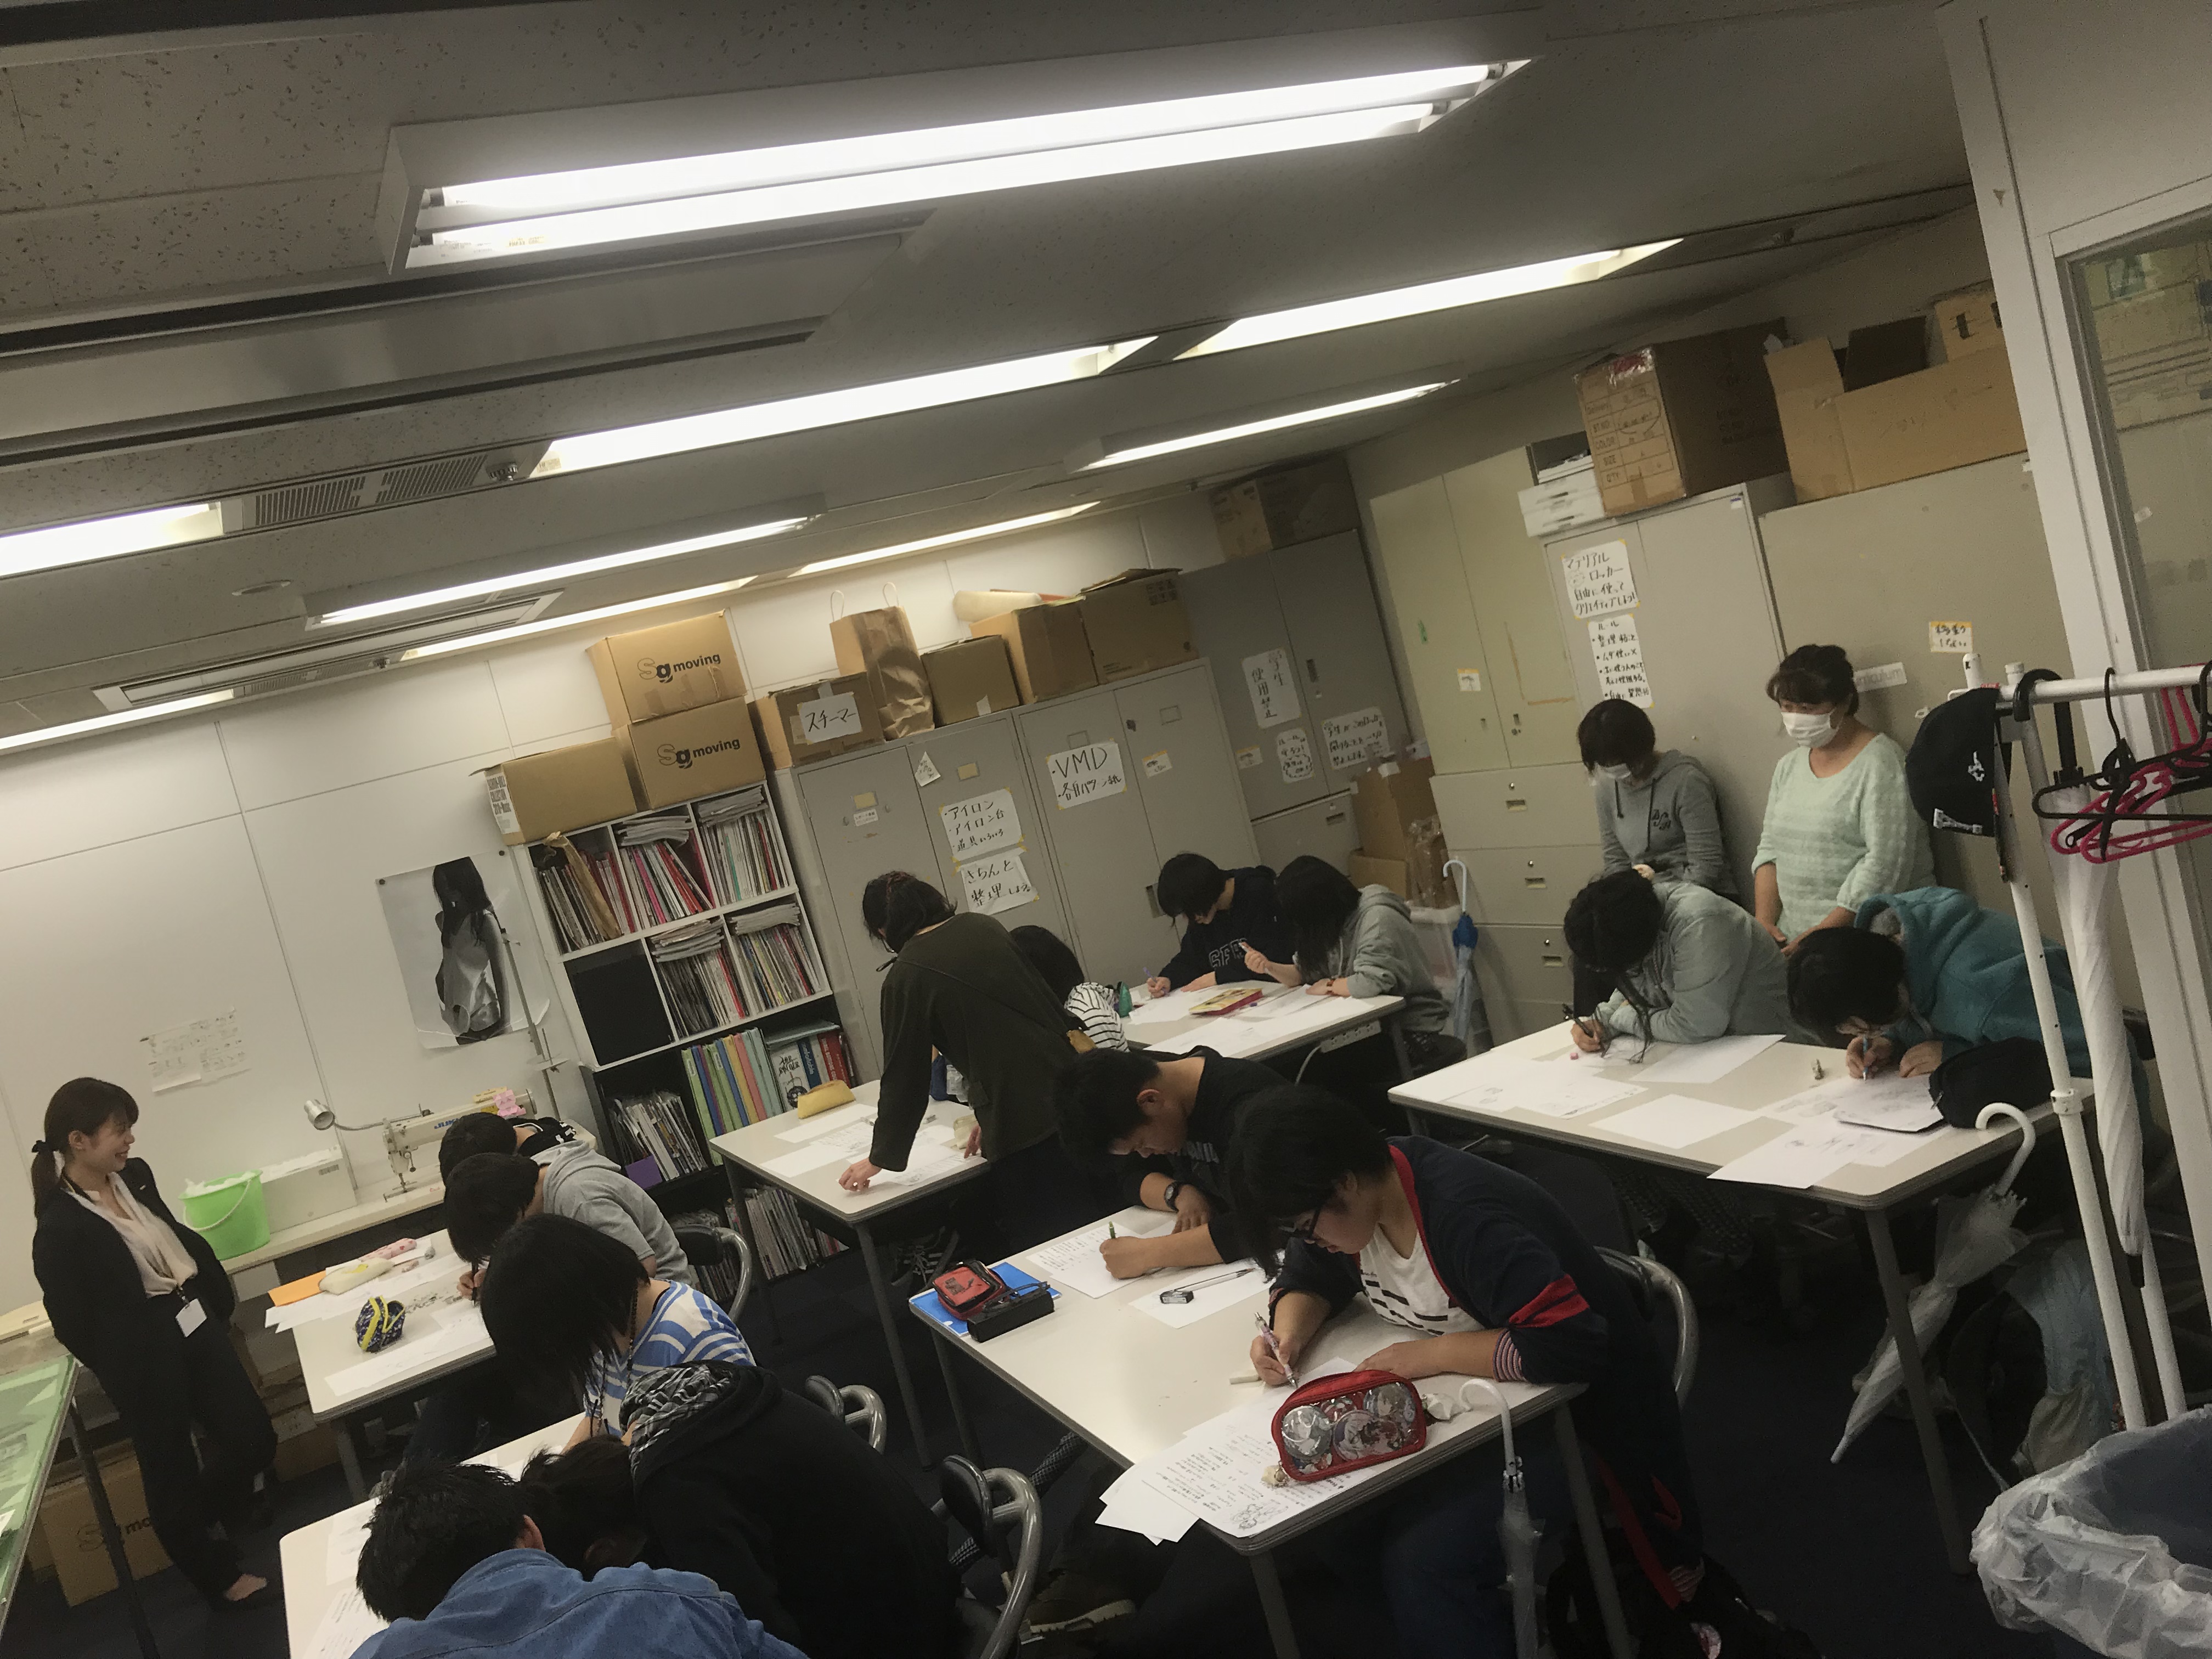 18年05月16日 校舎ブログ 大阪 スキルアップ イラスト体験授業を開催しています 総合学園ヒューマンアカデミー大阪校